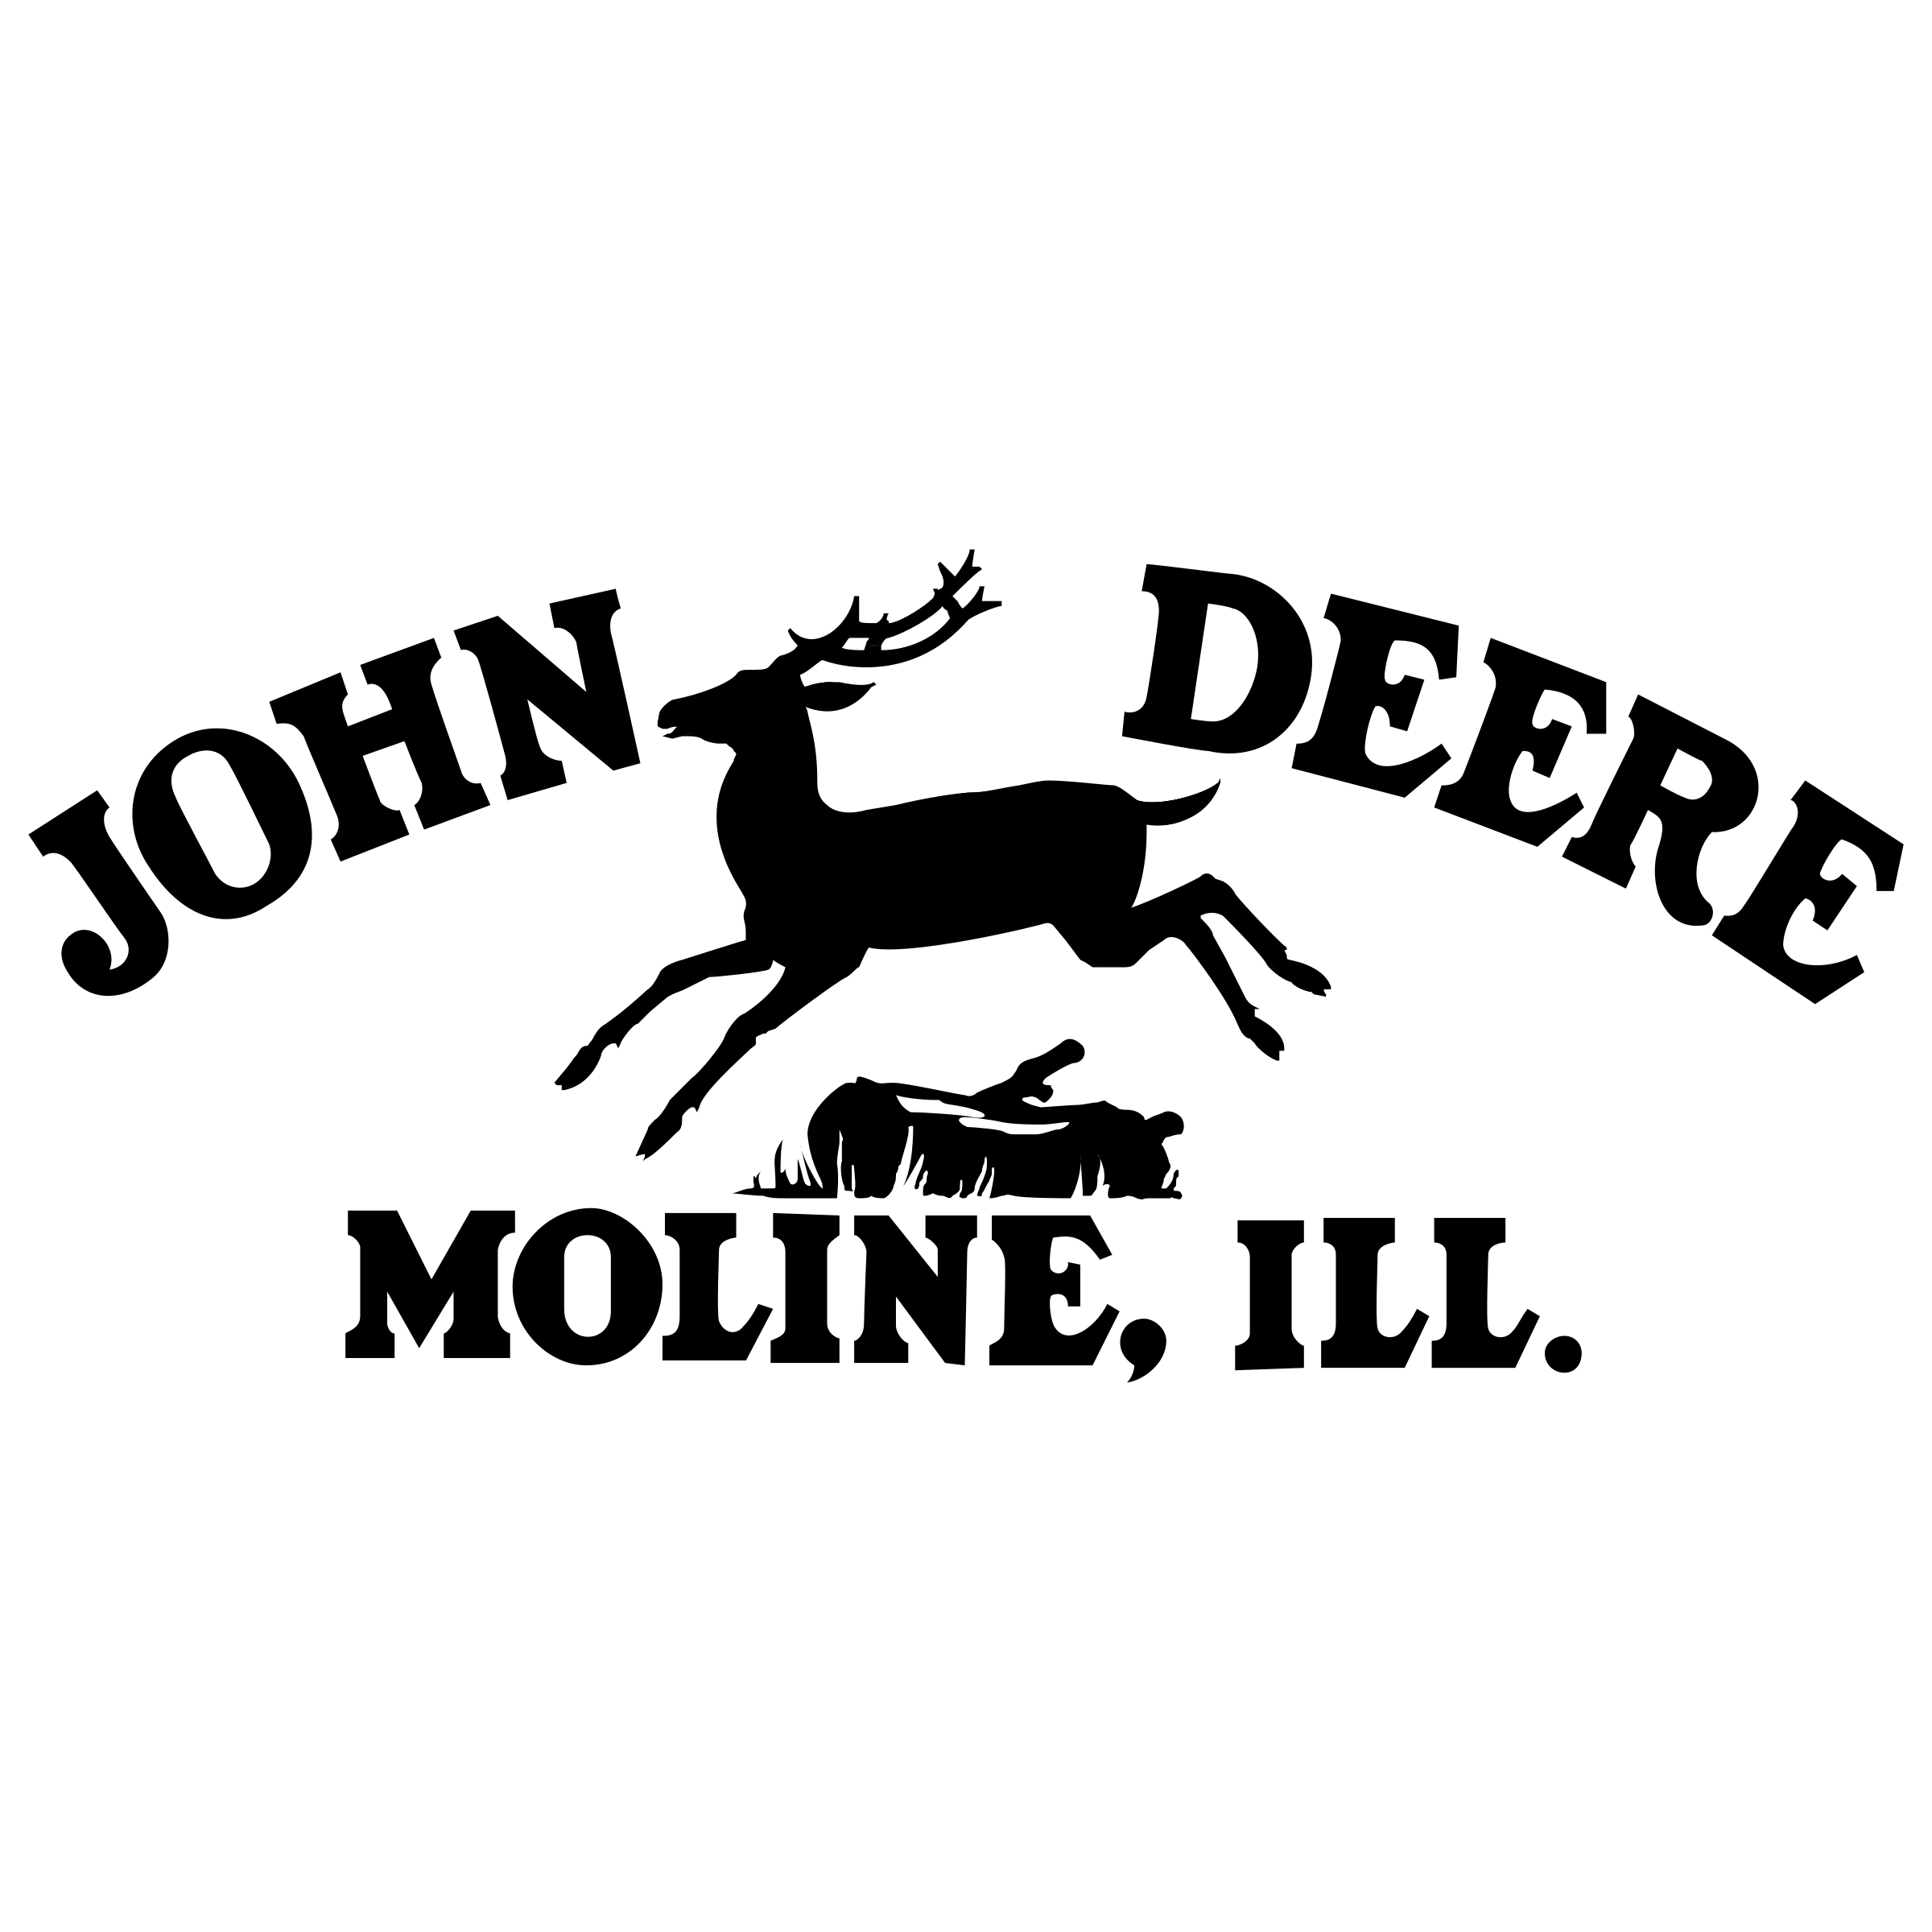 Moline Logo - John Deere Moline Logo PNG Transparent & SVG Vector